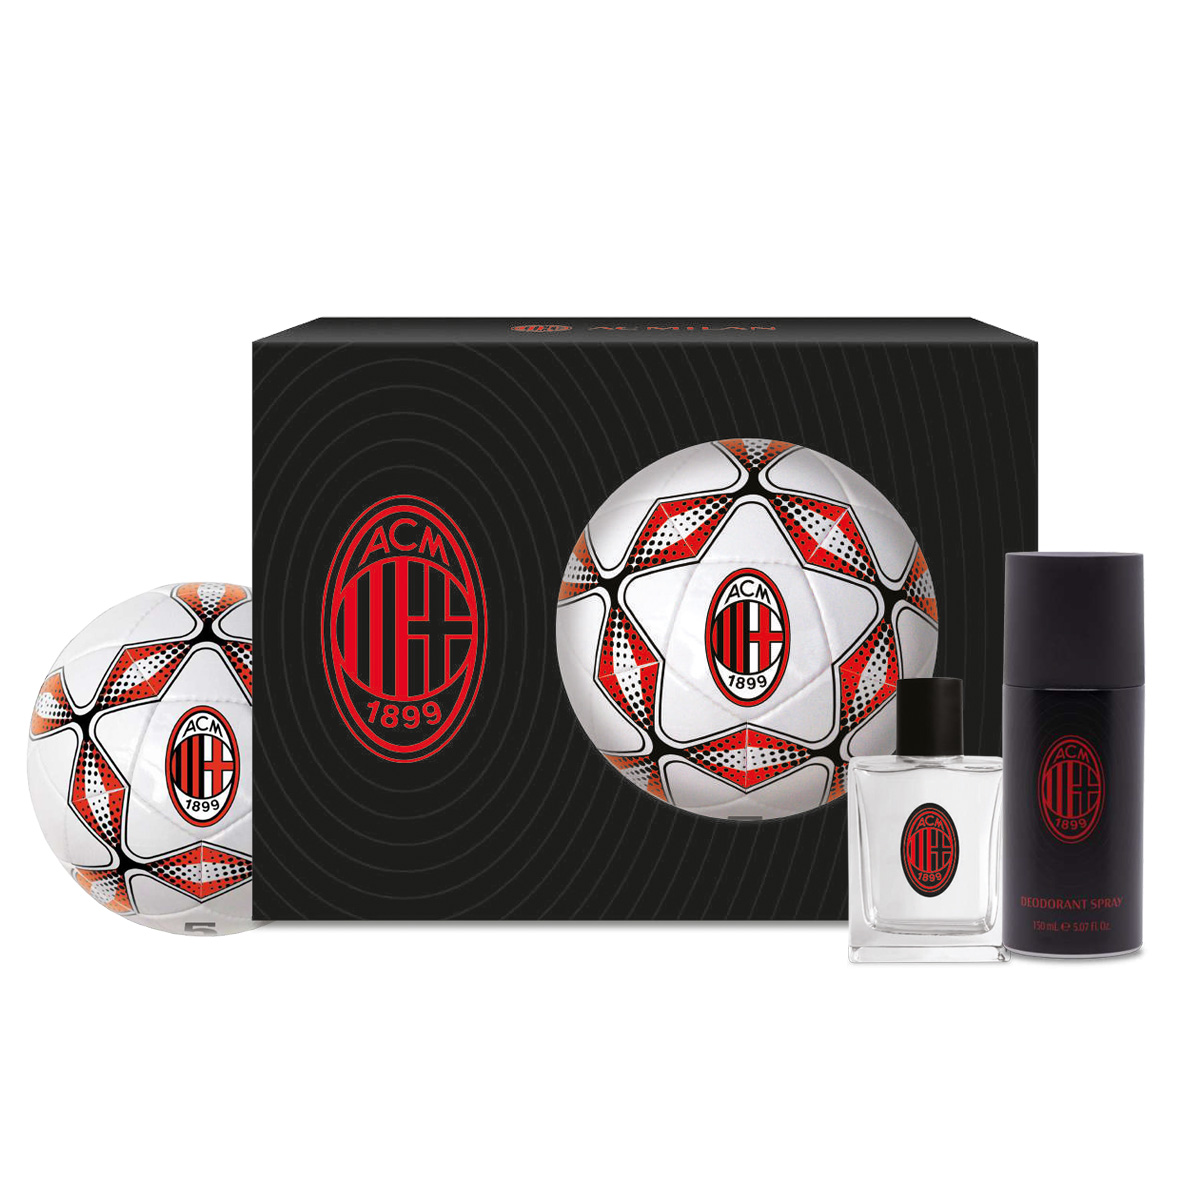 Eau de Toilette, shower Gel e pallone ufficiale Milan FC: il regalo rossonero